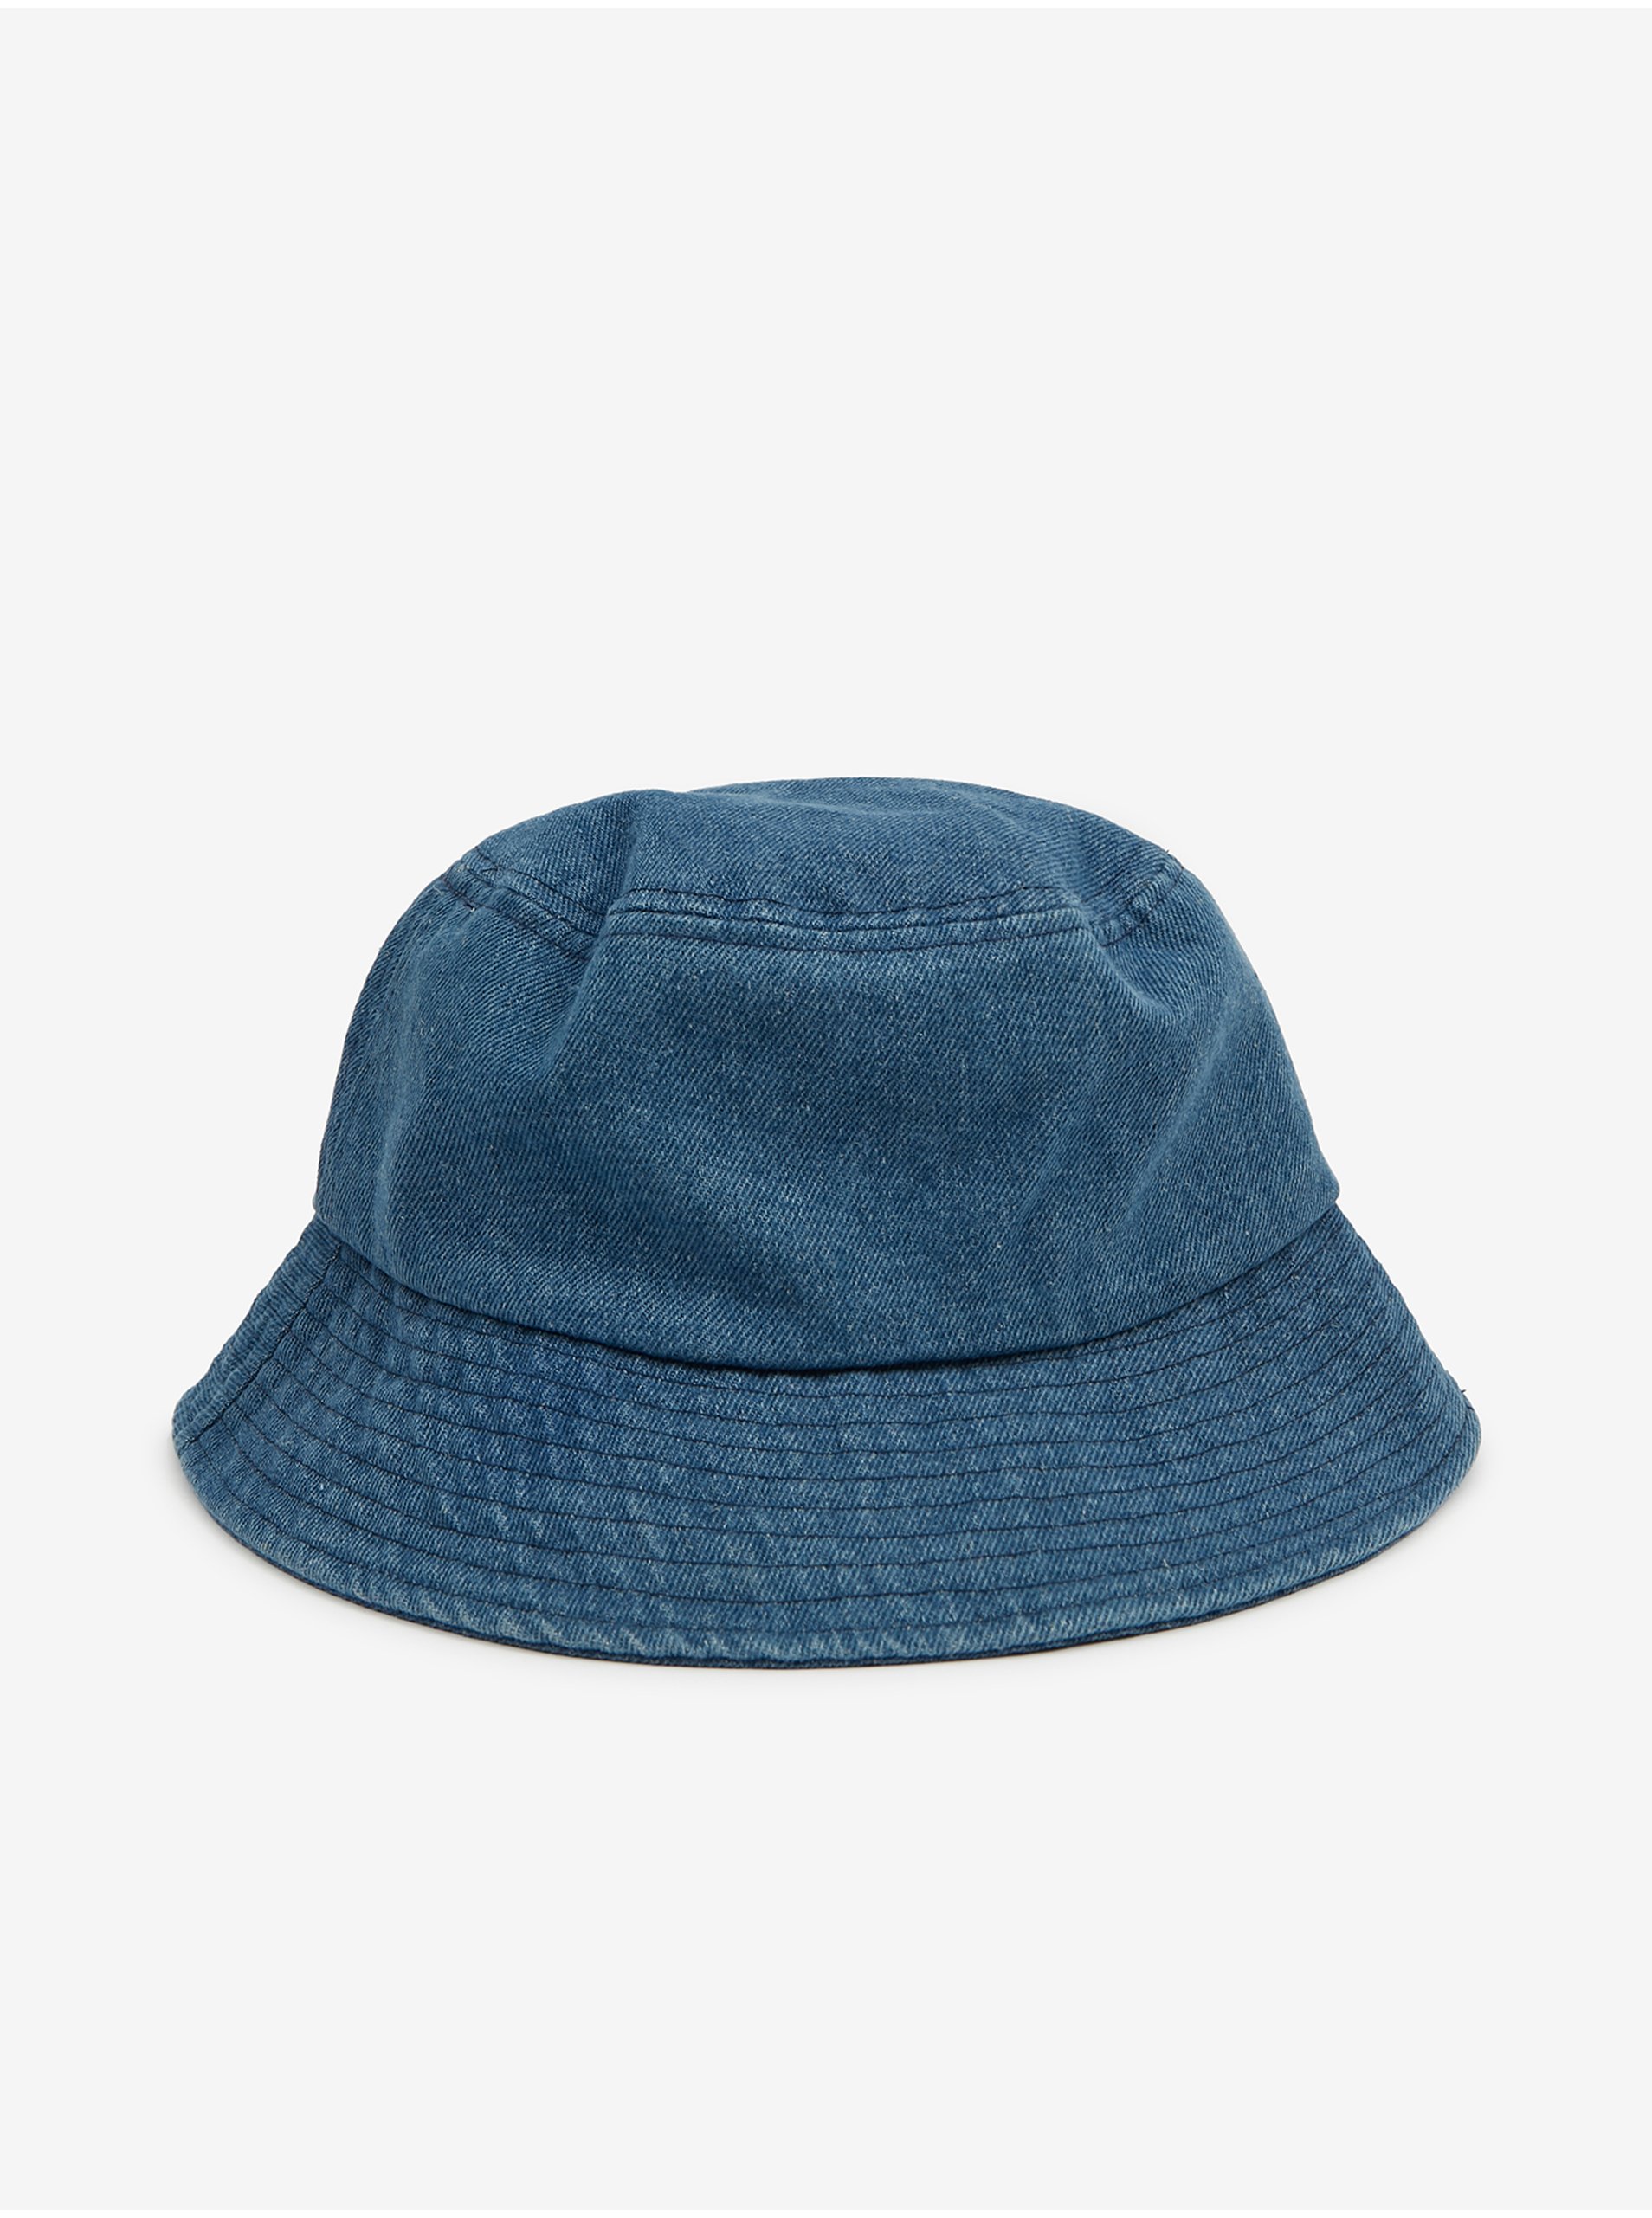 Modrý dámský klobouk ORSAY - Dámské